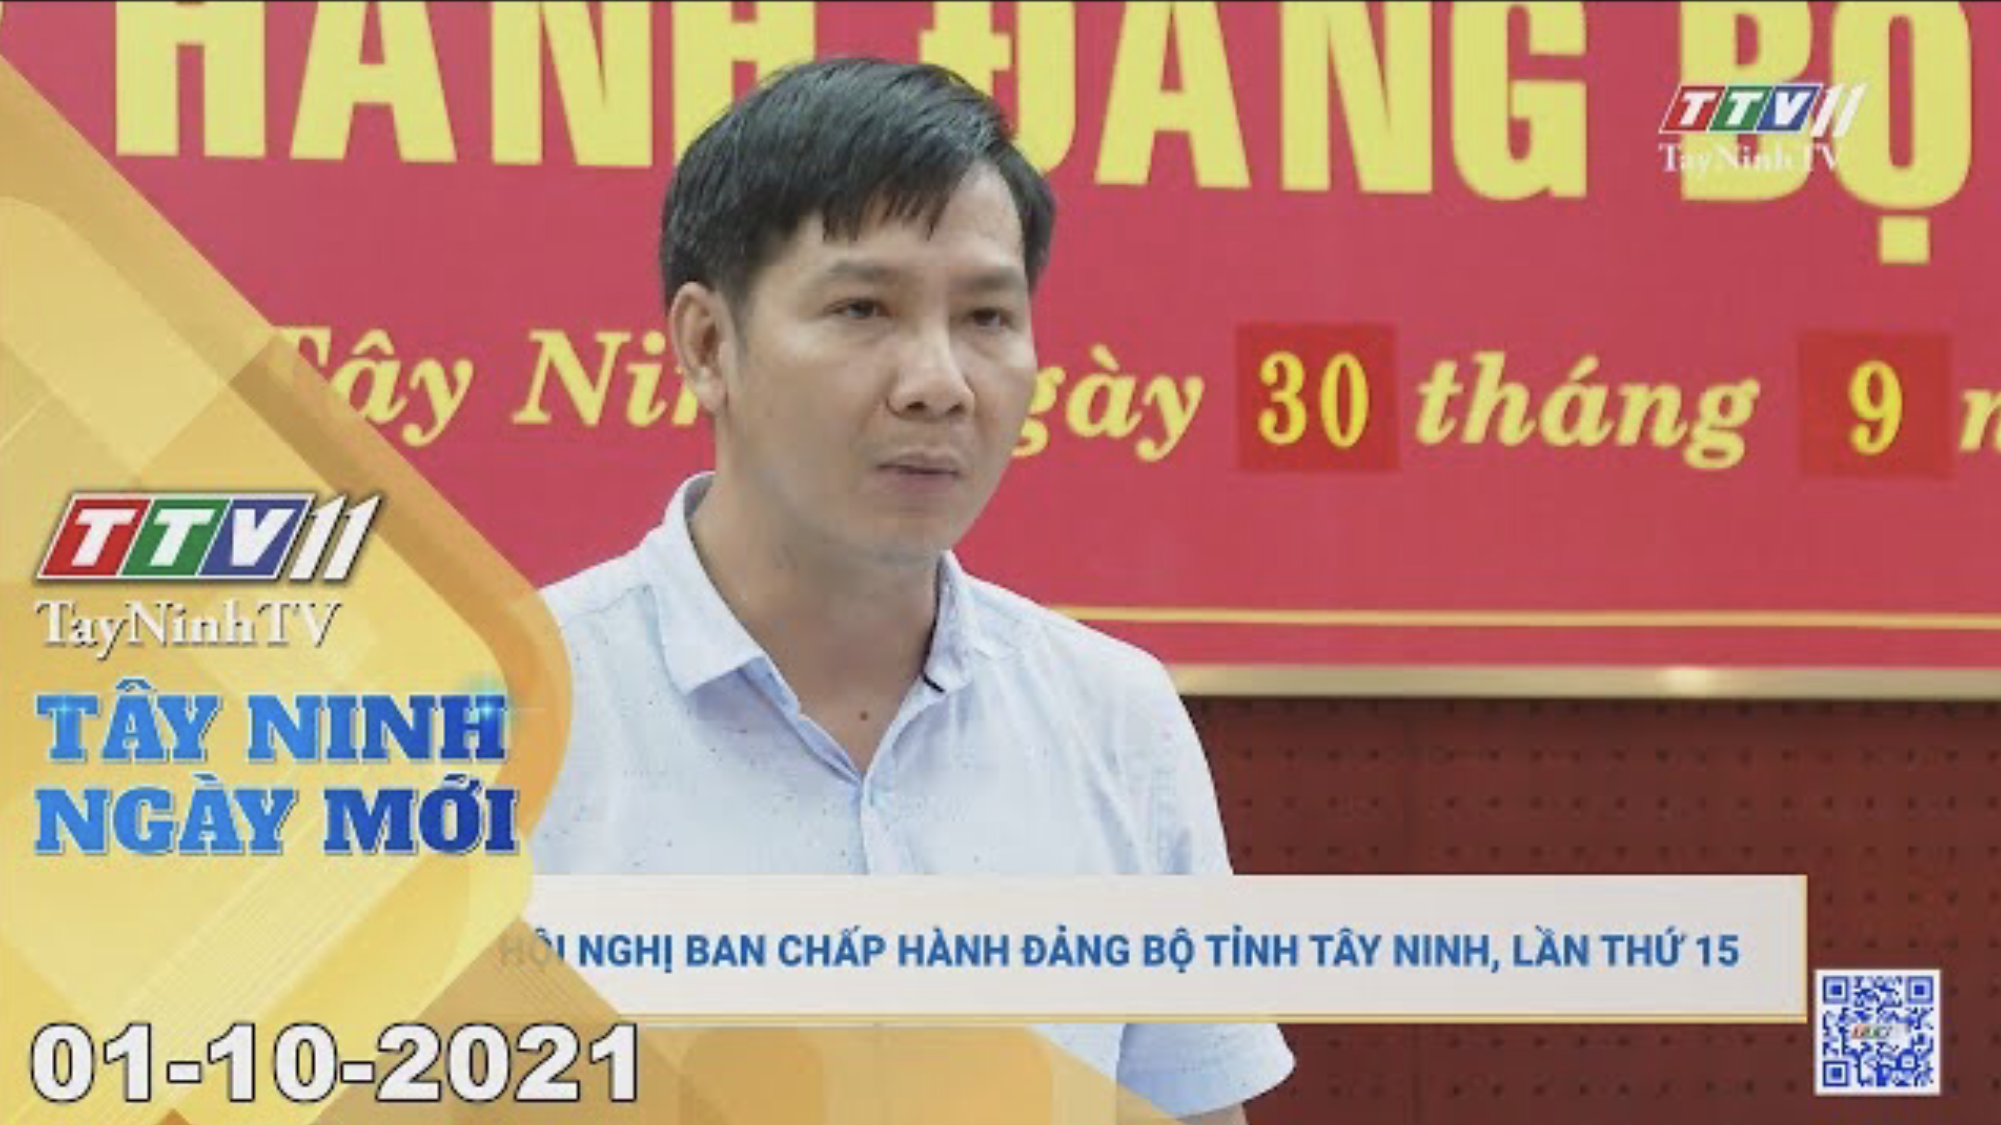 Tây Ninh ngày mới 01/10/2021 | Tin tức hôm nay | TayNinhTV